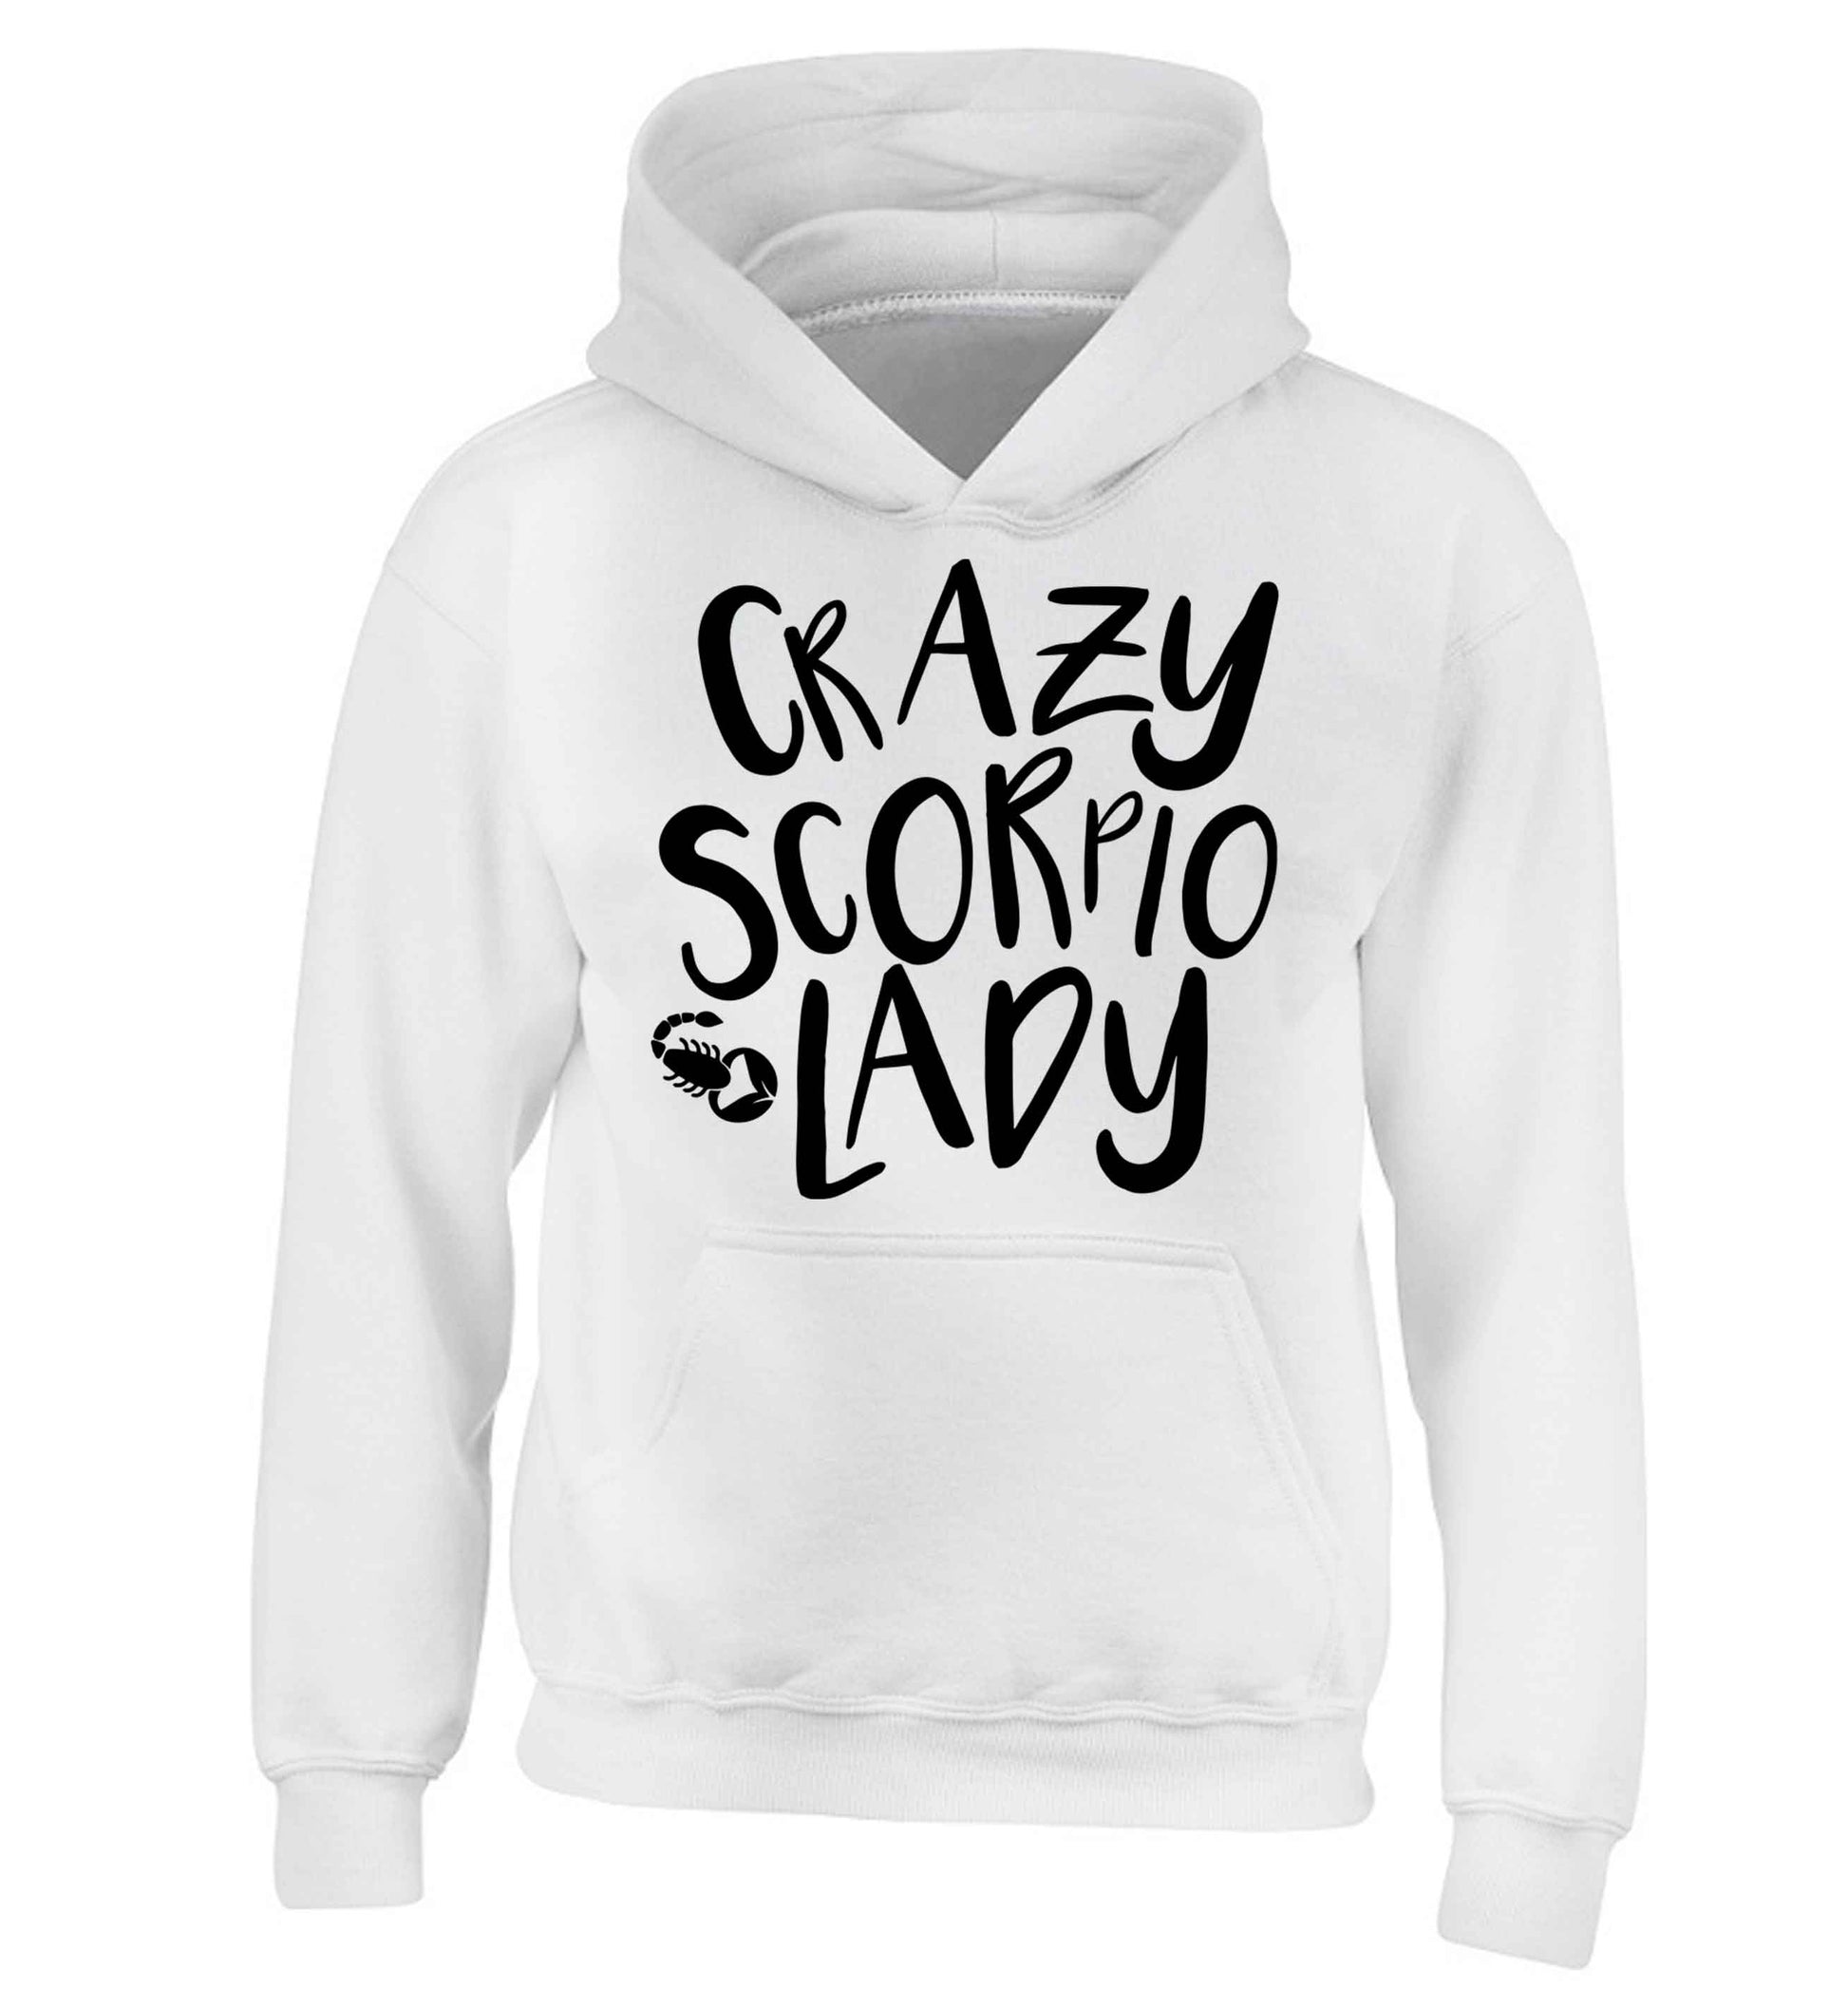 Crazy scorpio lady children's white hoodie 12-13 Years